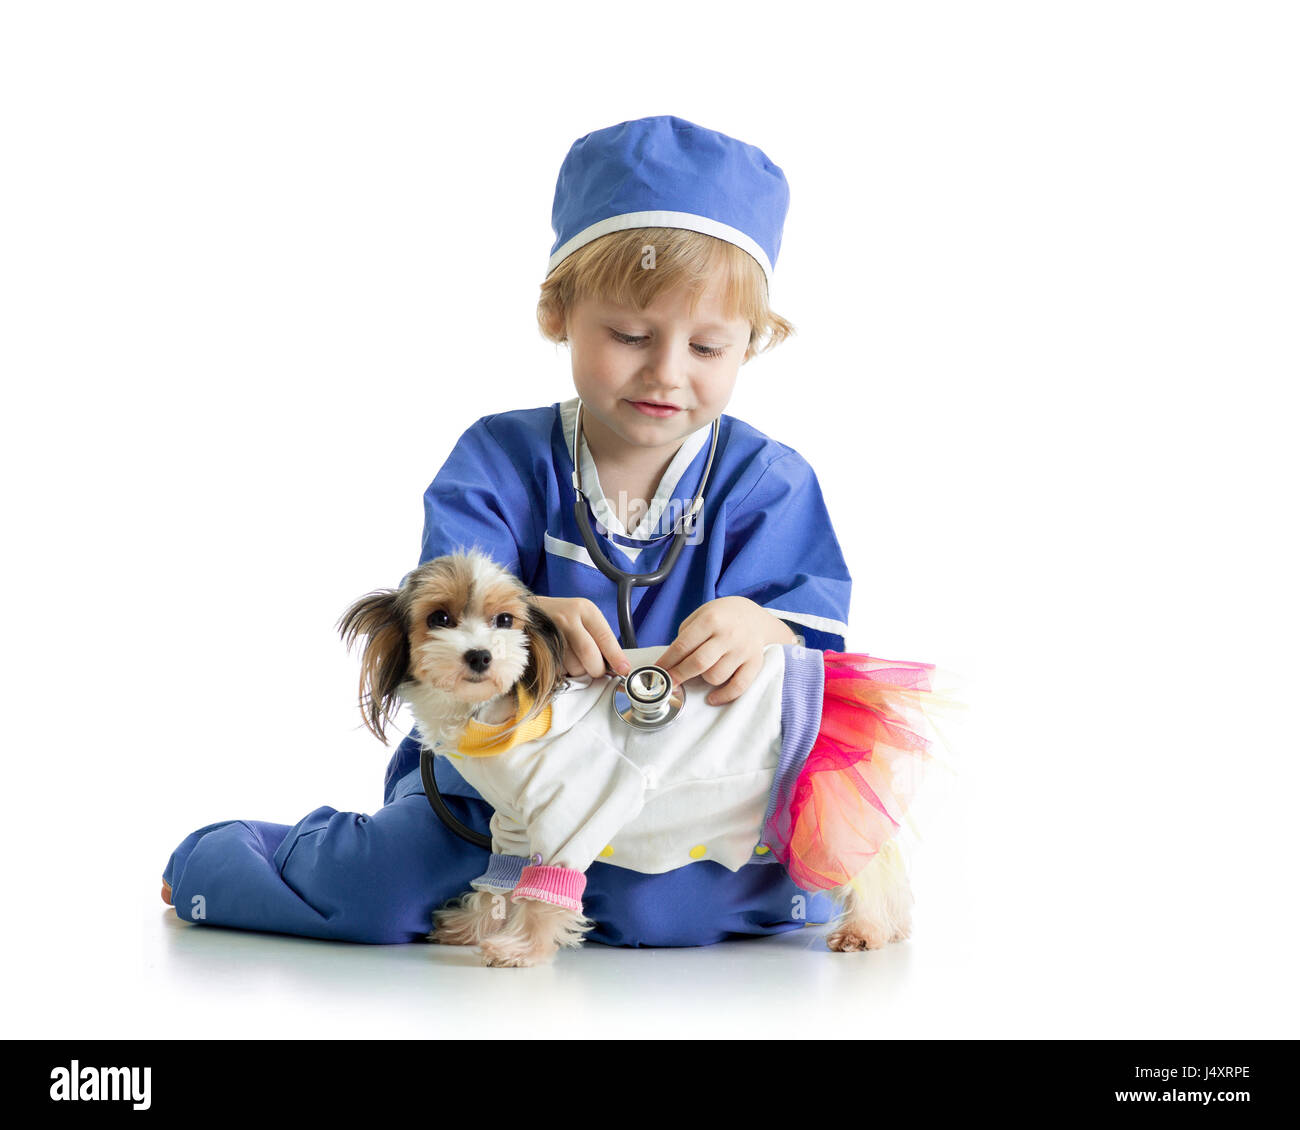 Petit garçon examinant puppy dog, isolé sur fond blanc Banque D'Images